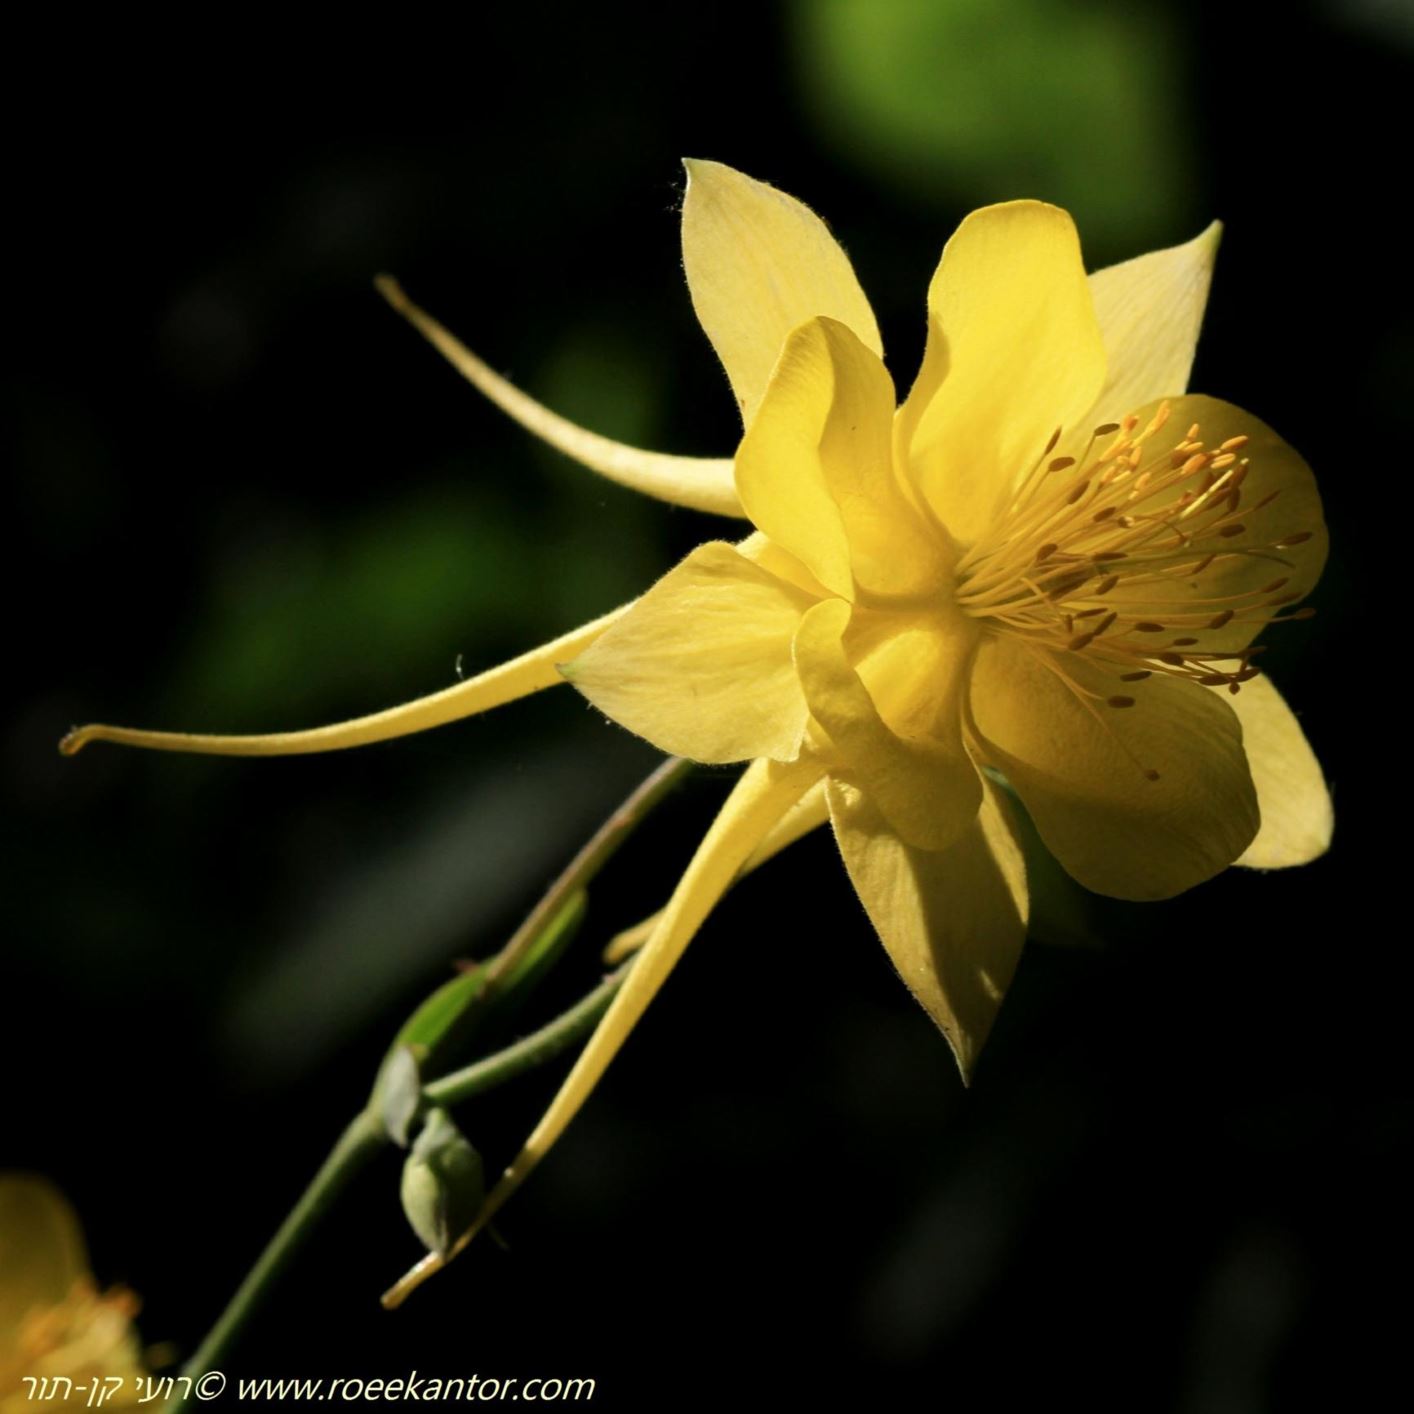 Aquilegia chrysantha - אקווילגיה צהובה, אקווילגיה צהובה